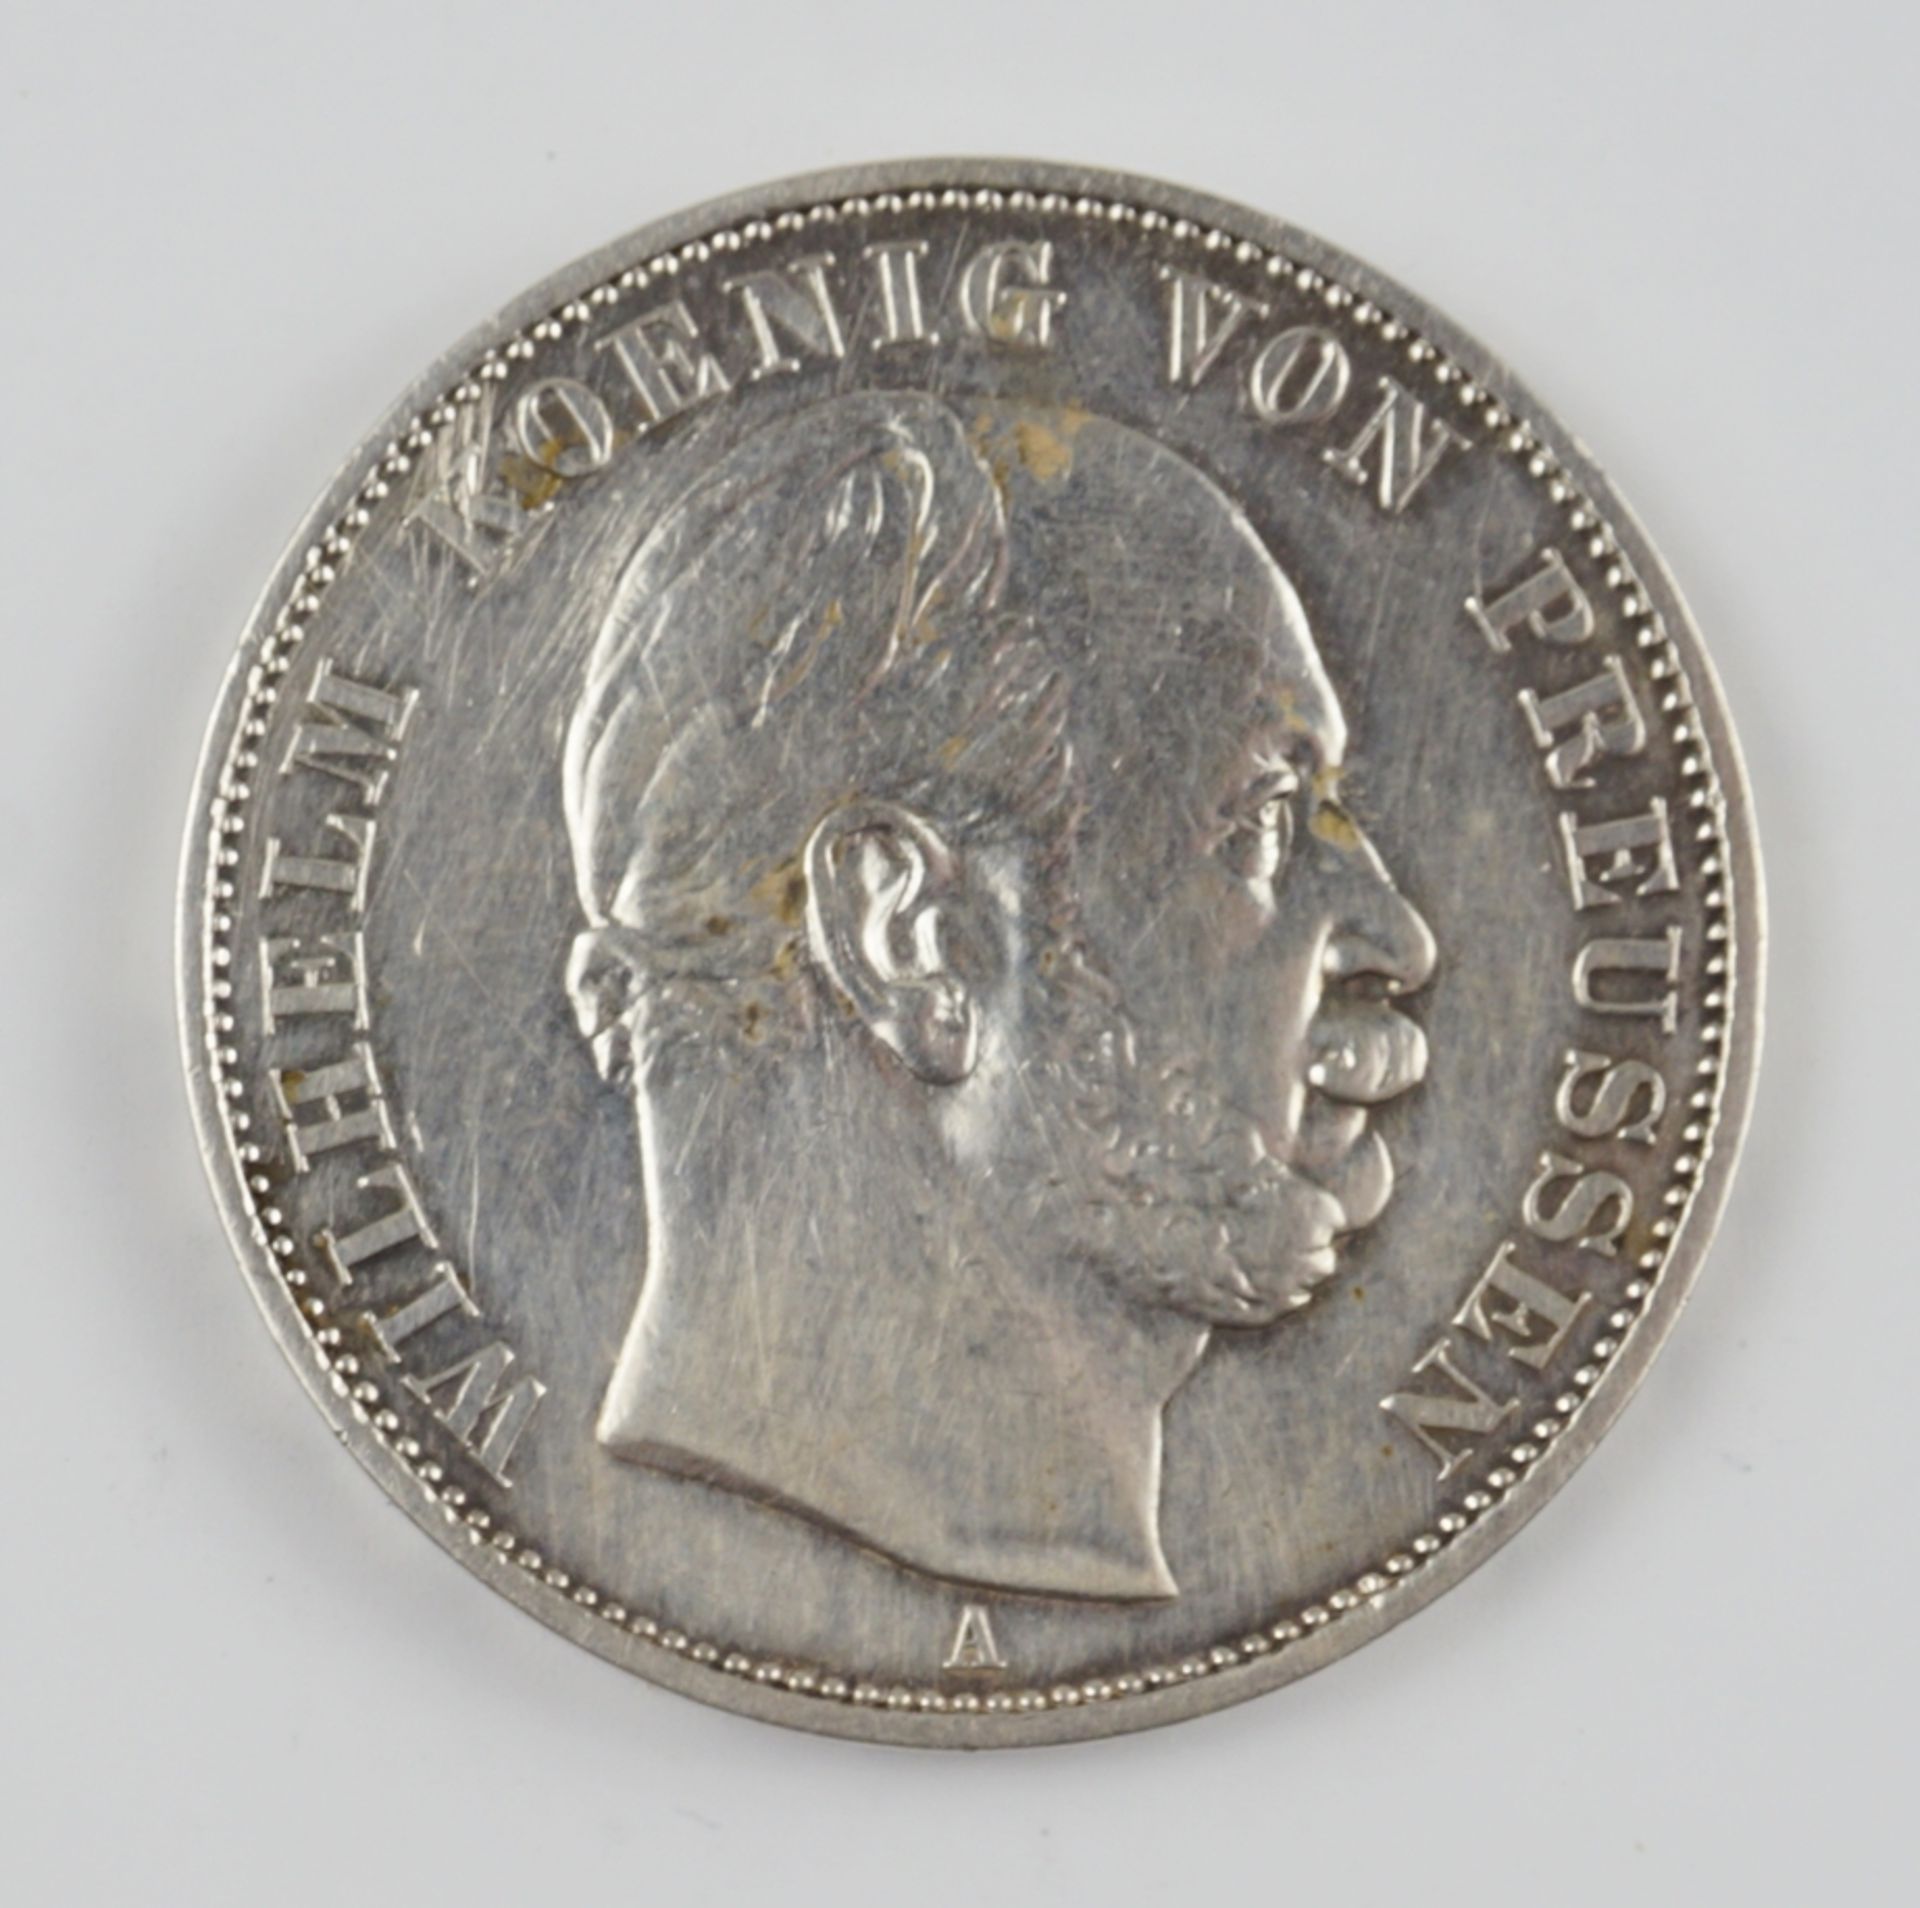 Siegesthaler 1871, Gedenkmünze, Sieg über Frankreich, Wilhelm, König von Preussen, Silber - Image 2 of 2